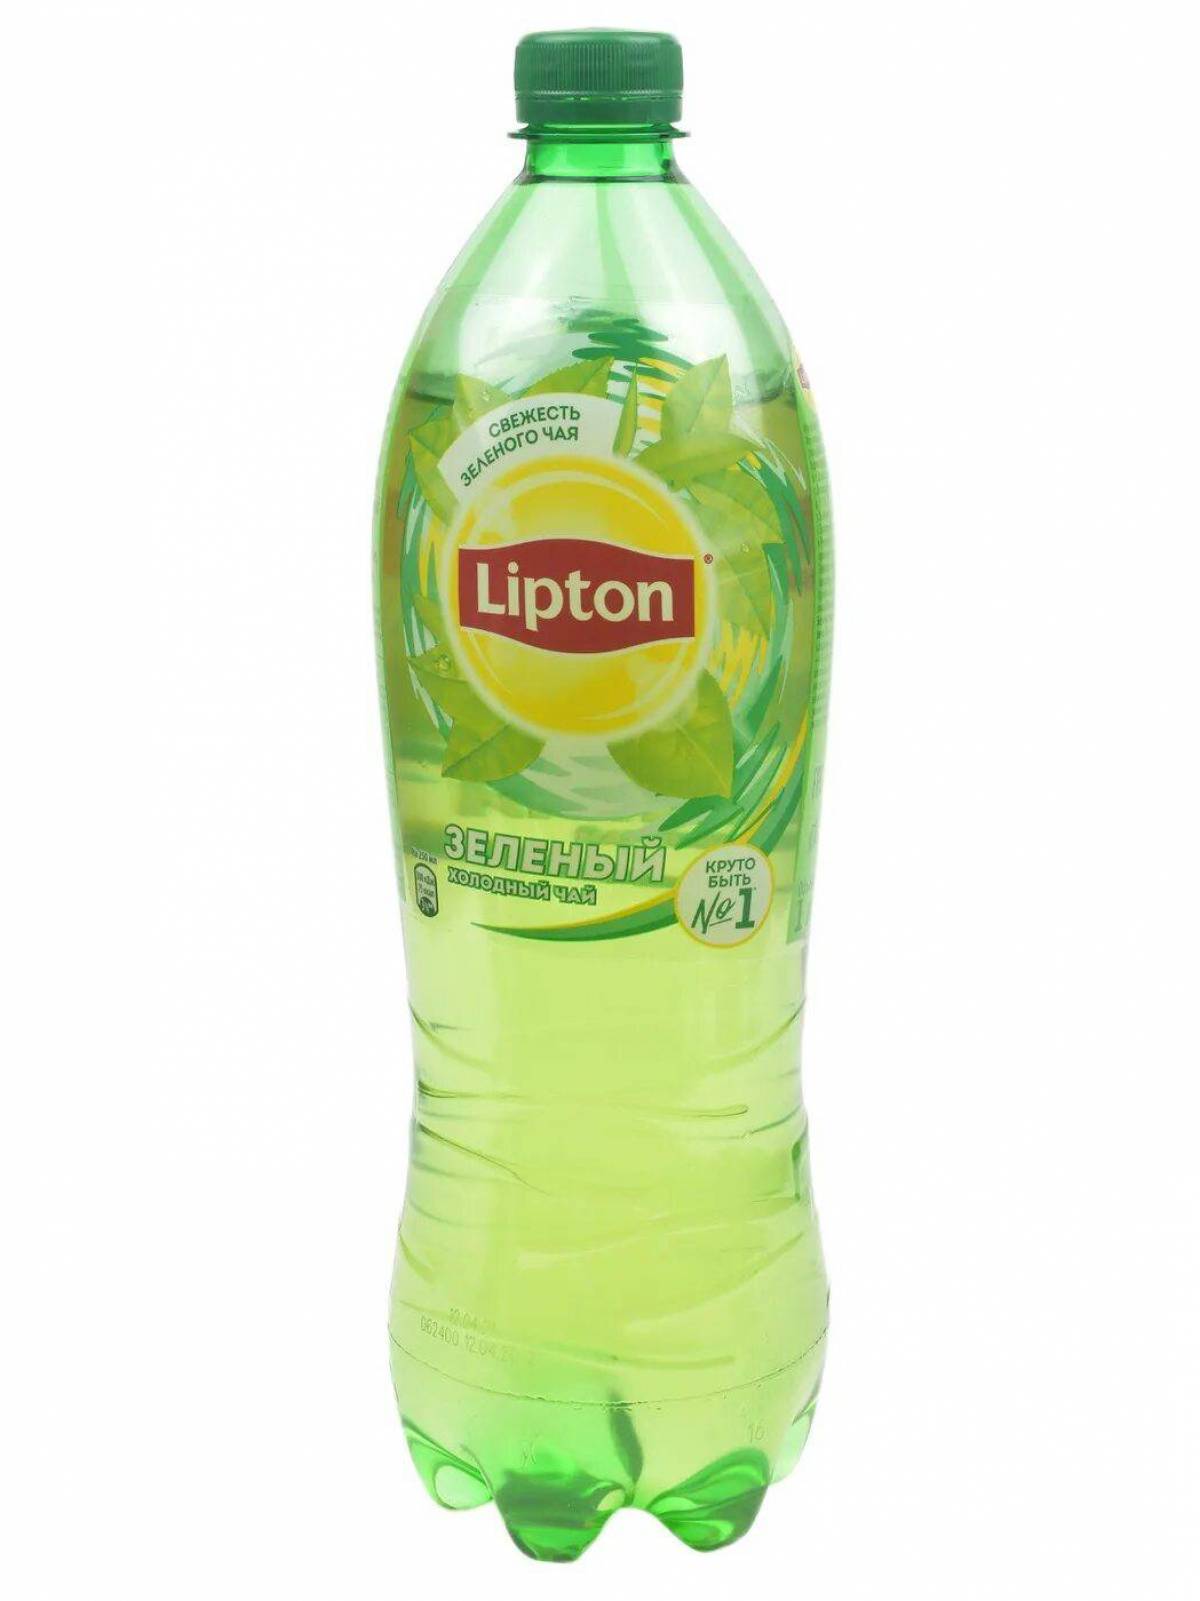 Бутылка зеленого липтона. Липтон зеленый 1л. Липтон зеленый чай 1л. Чай Липтон зел. 1л. Липтон зелёный холодный чай.